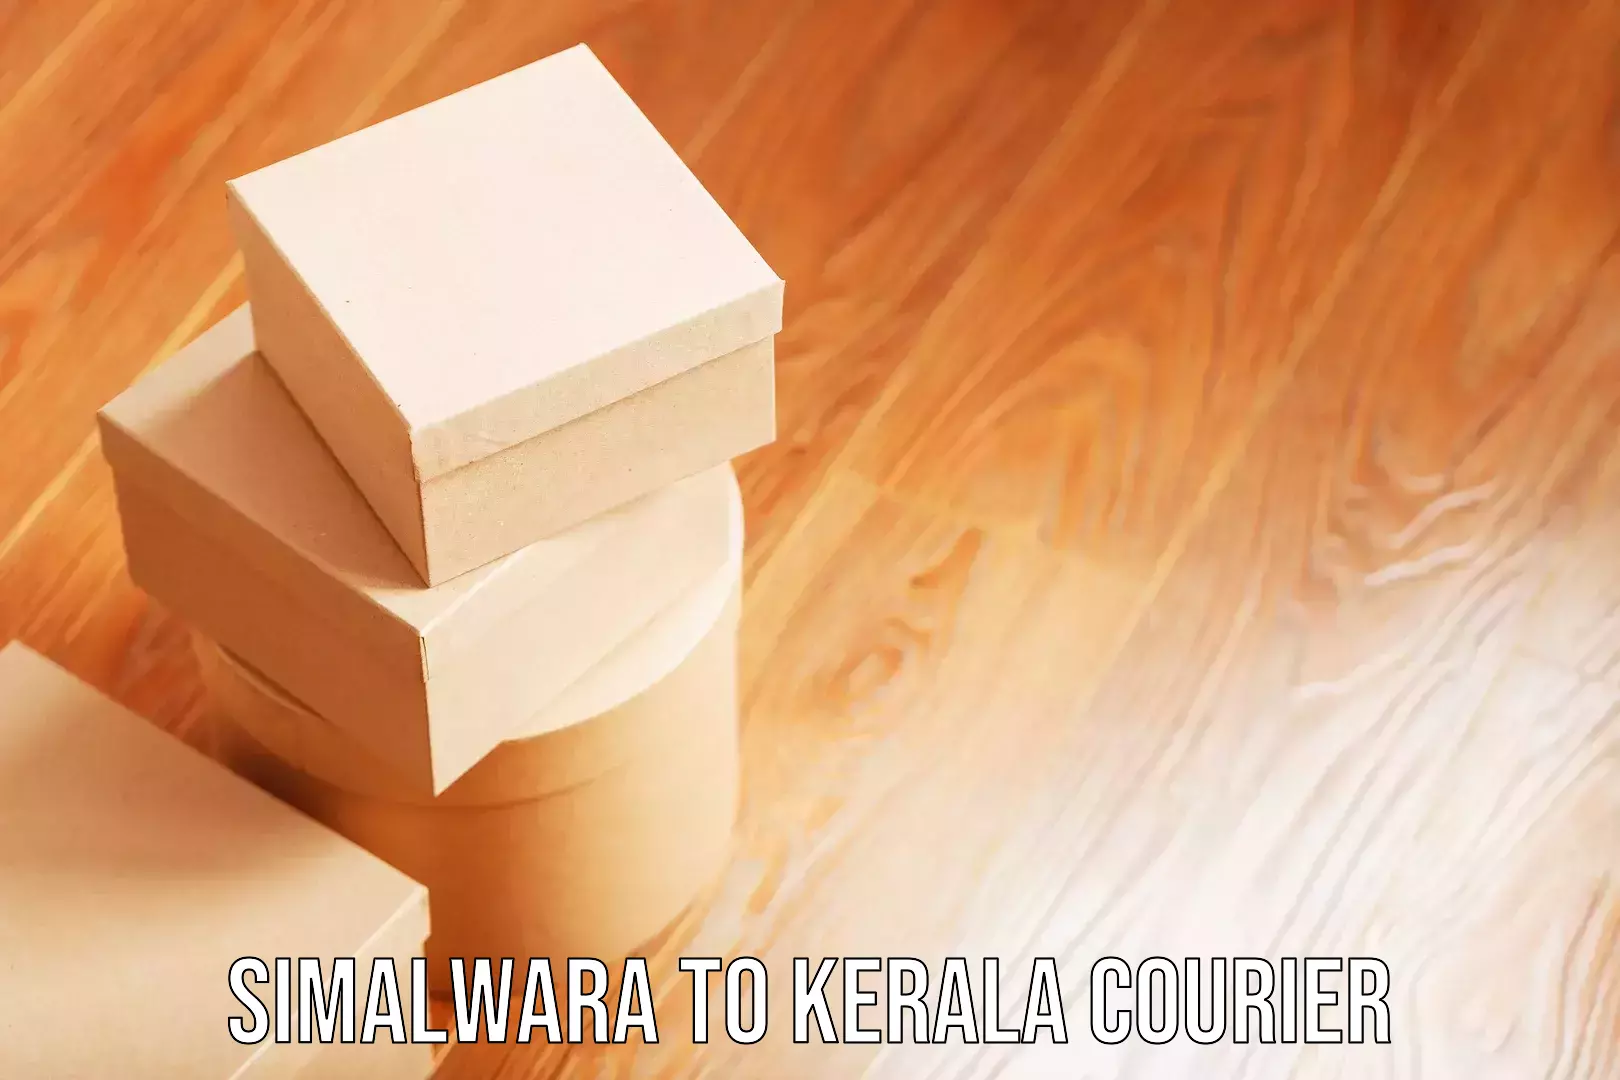 Nationwide luggage courier Simalwara to Kerala